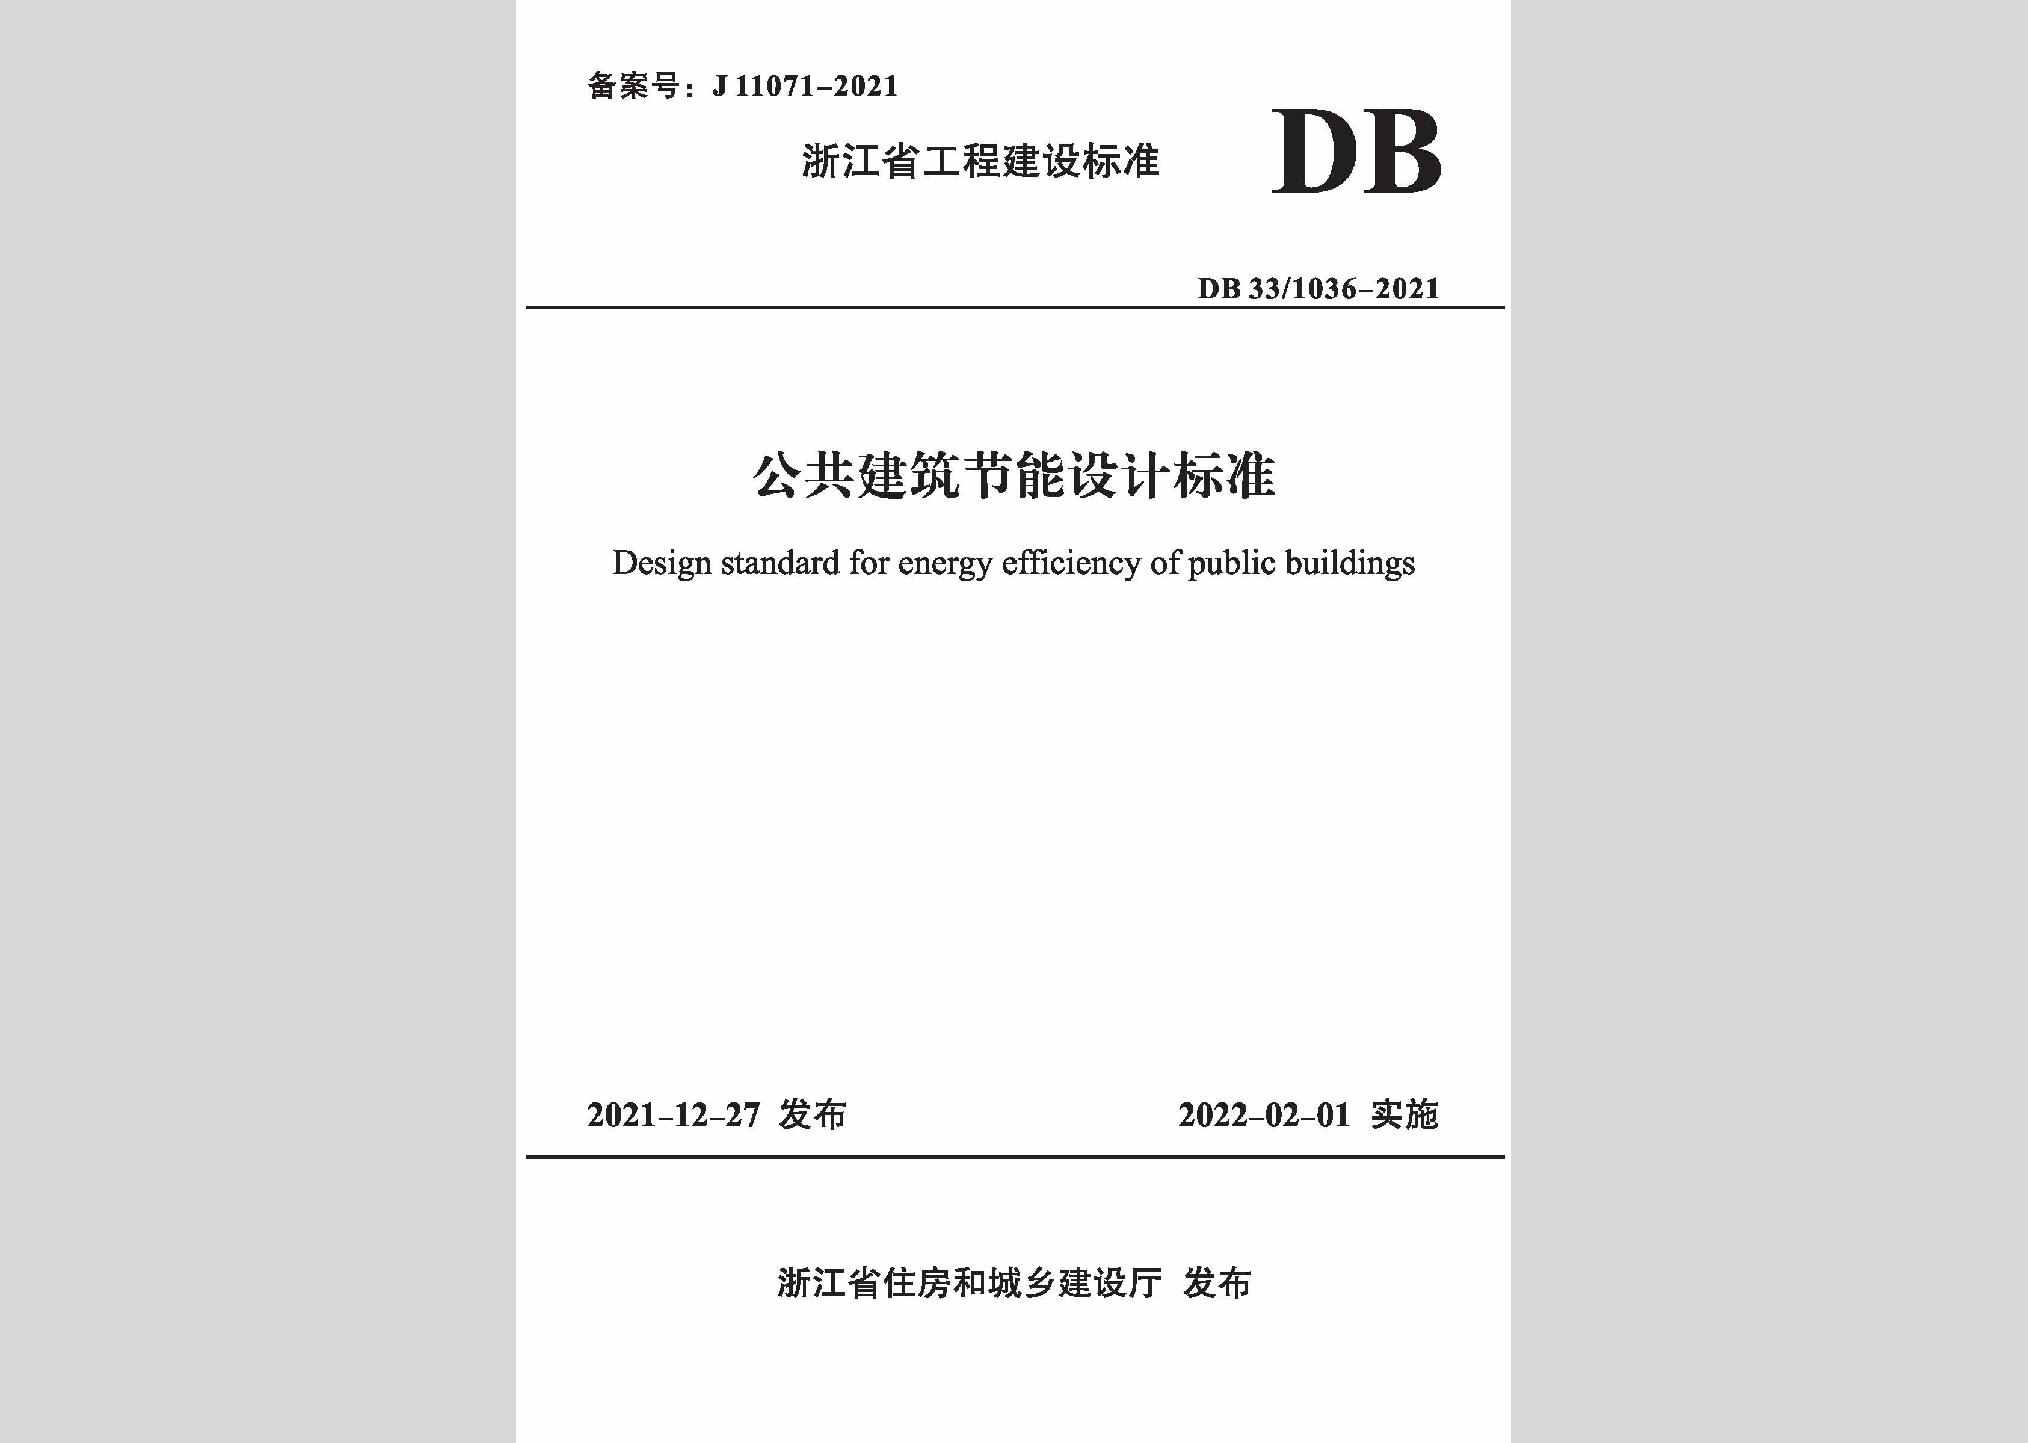 DB33/1036-2021：公共建筑节能设计标准